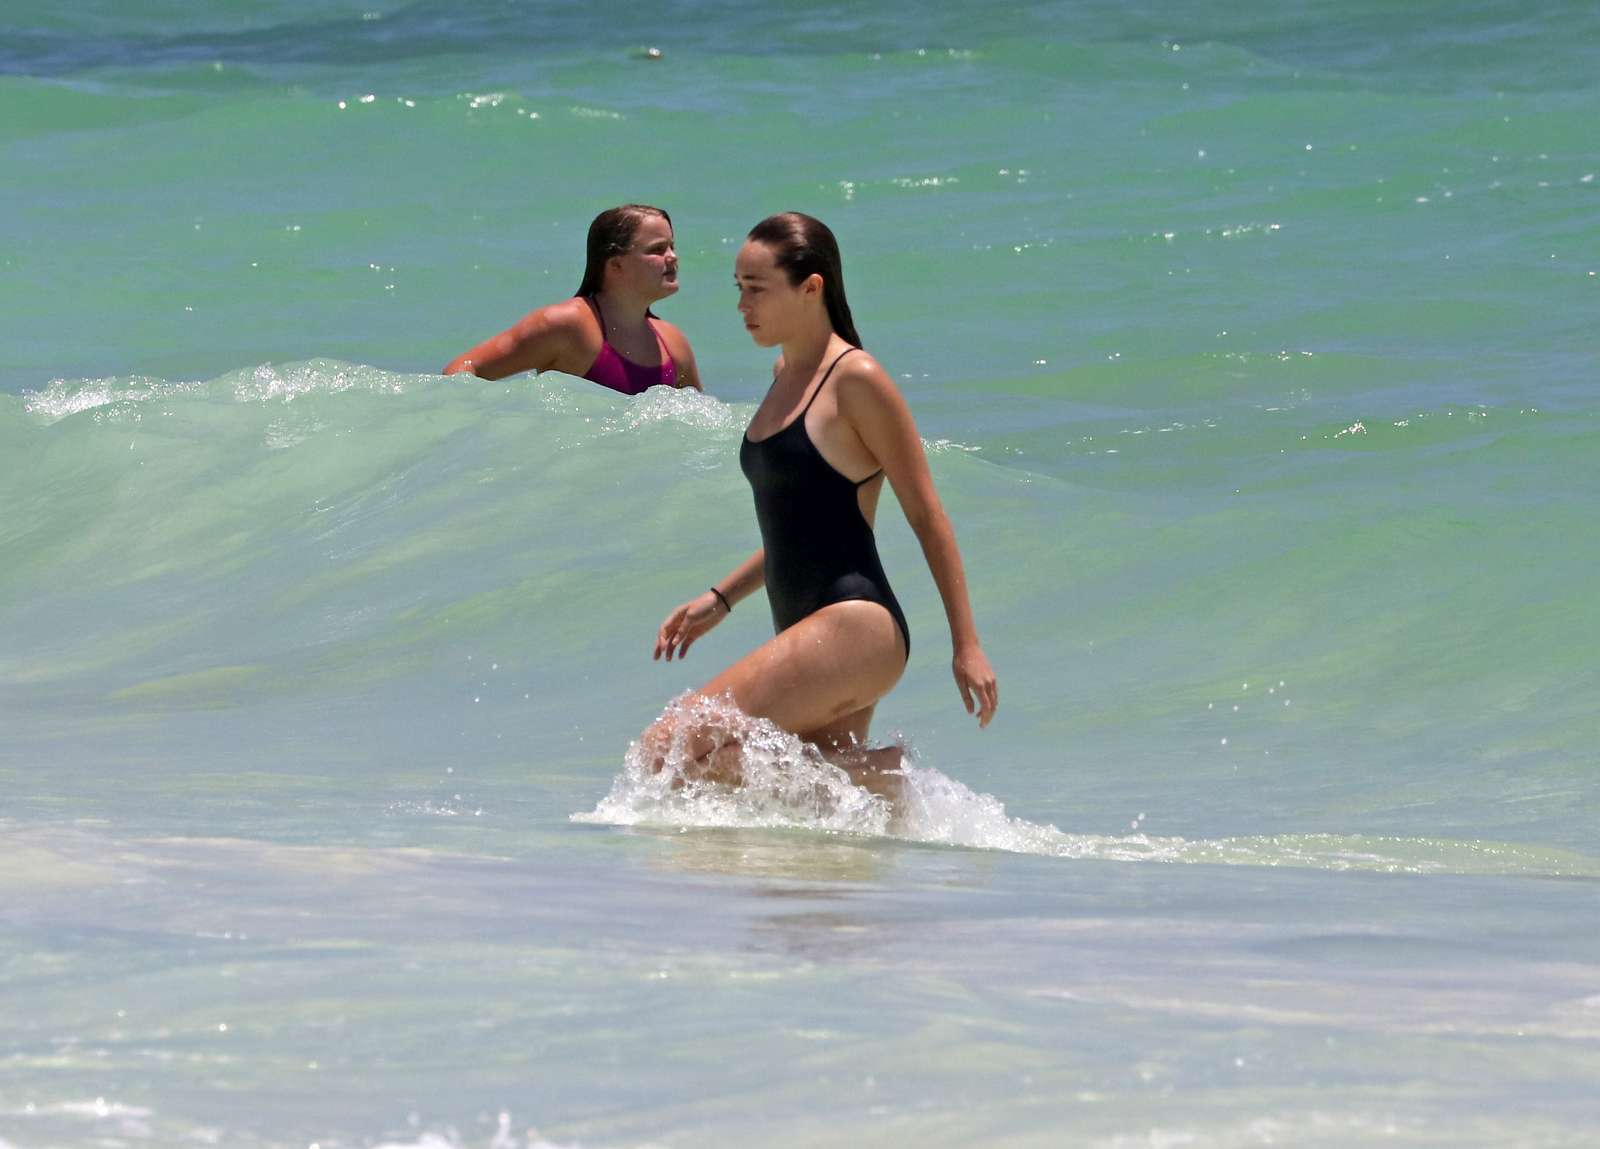 Alycia Debnam-Carey in Black Swimsuit in Tulum. 